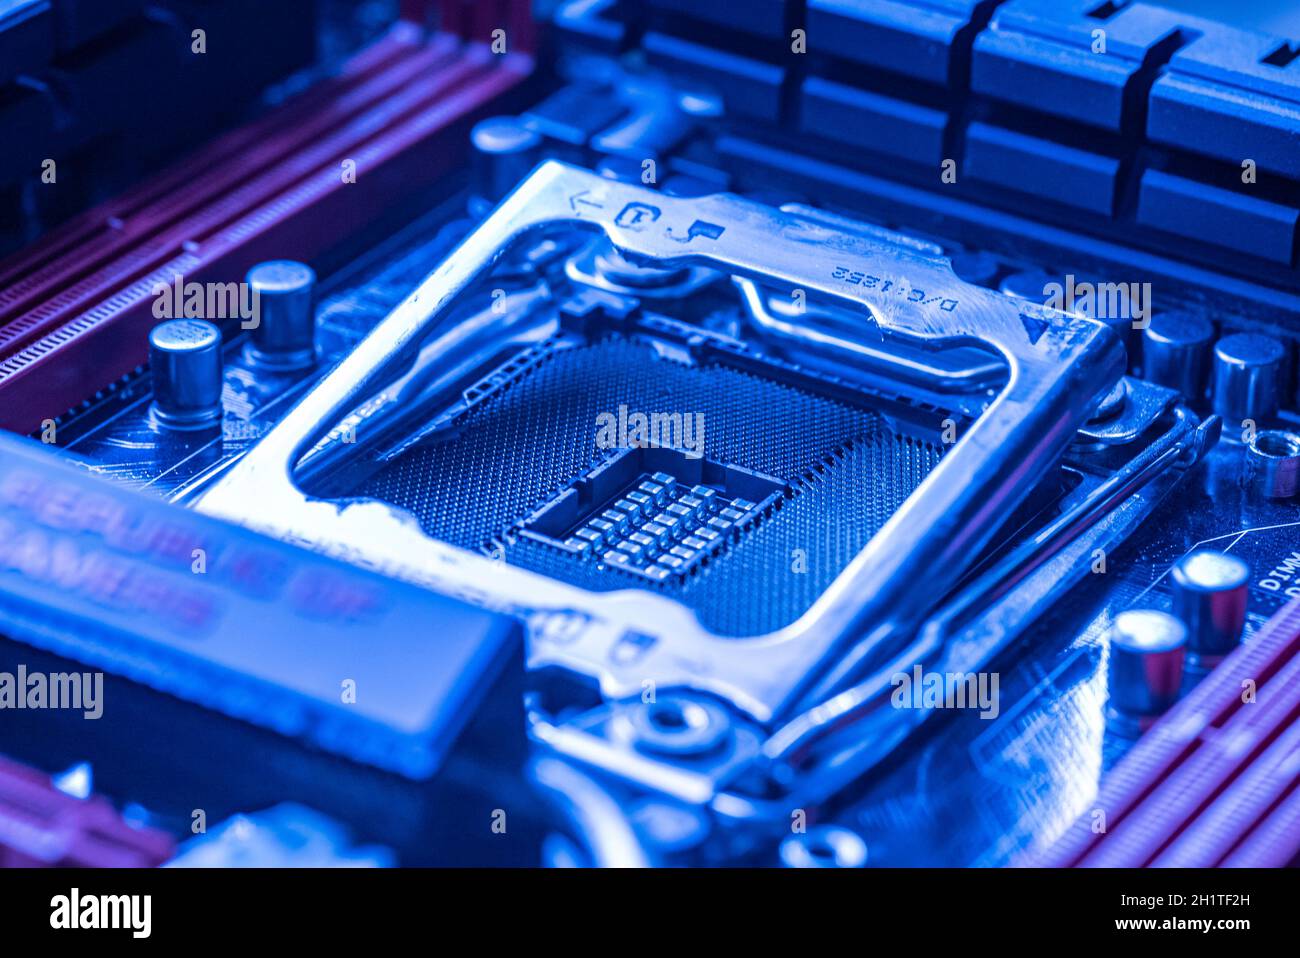 LOS ANGELES, USA 25. APRIL 2021: Detail eines CPU-Sockels in einem Motherboard eines Gaming-pcs im Blaulicht Stockfoto